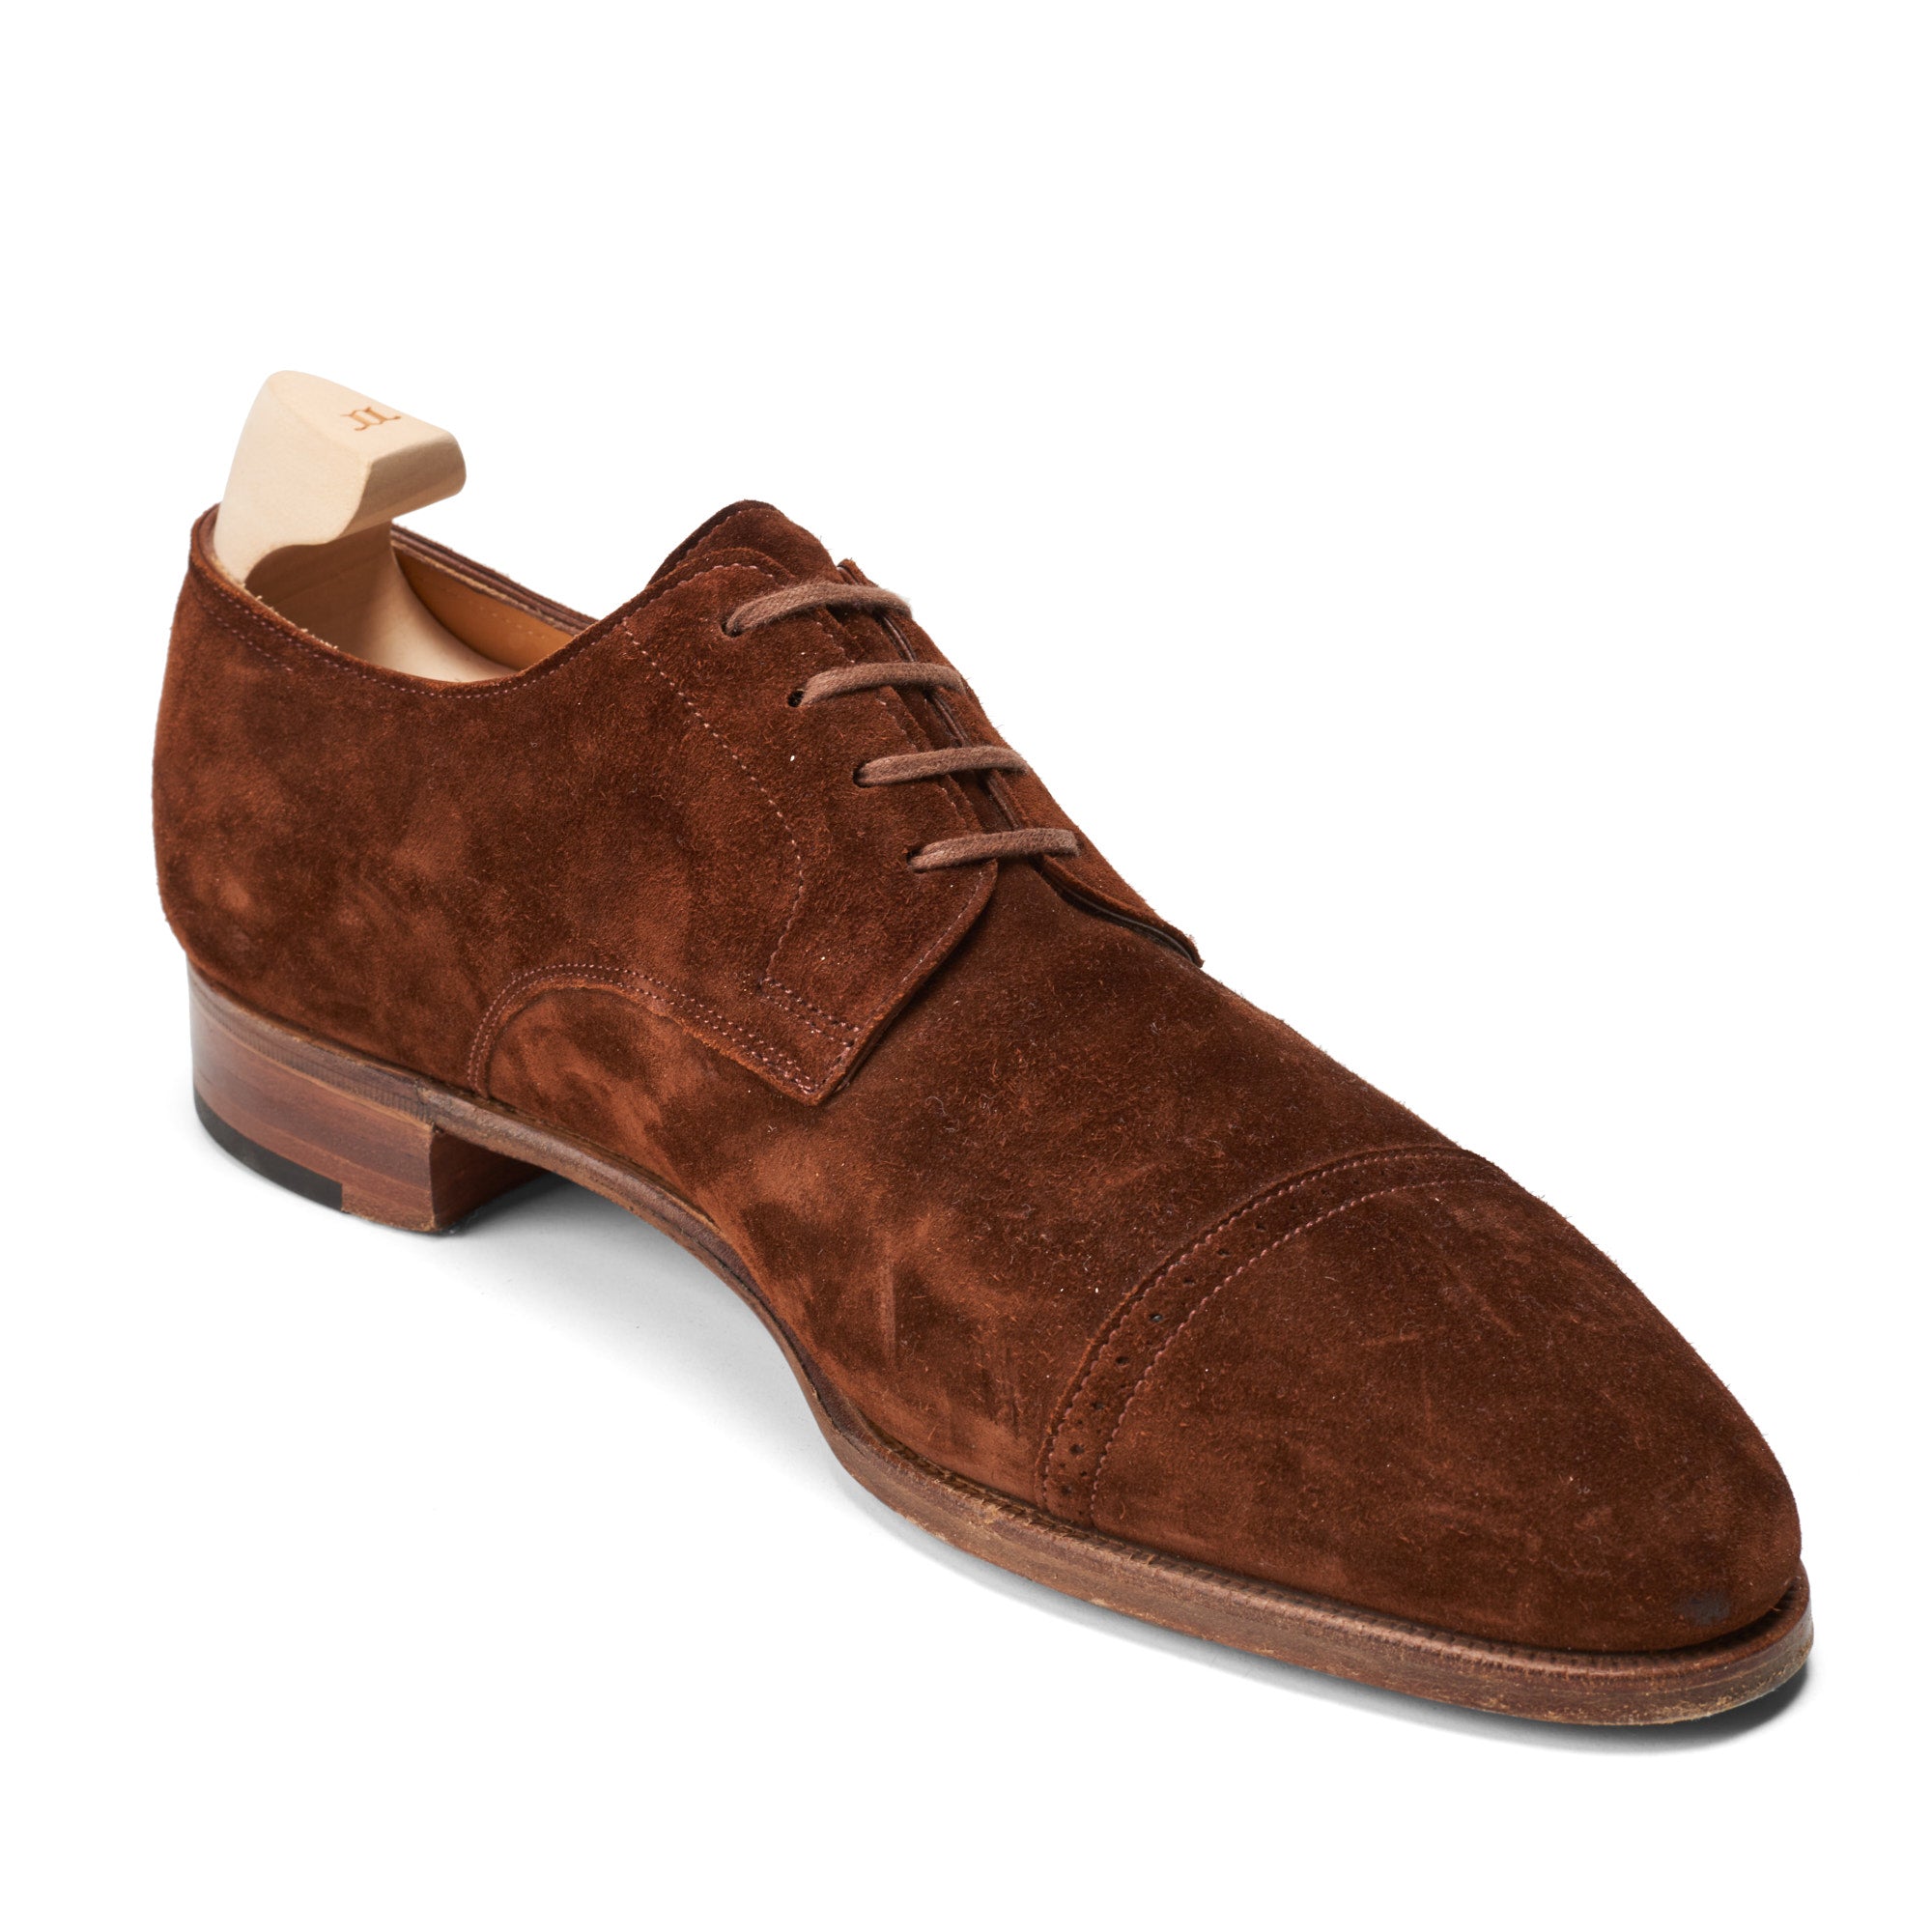 JOHN LOBB By REQUEST "Philip II Derby" Suede Derby Shoes UK 7.5E US 8.5 Last7000 JOHN LOBB